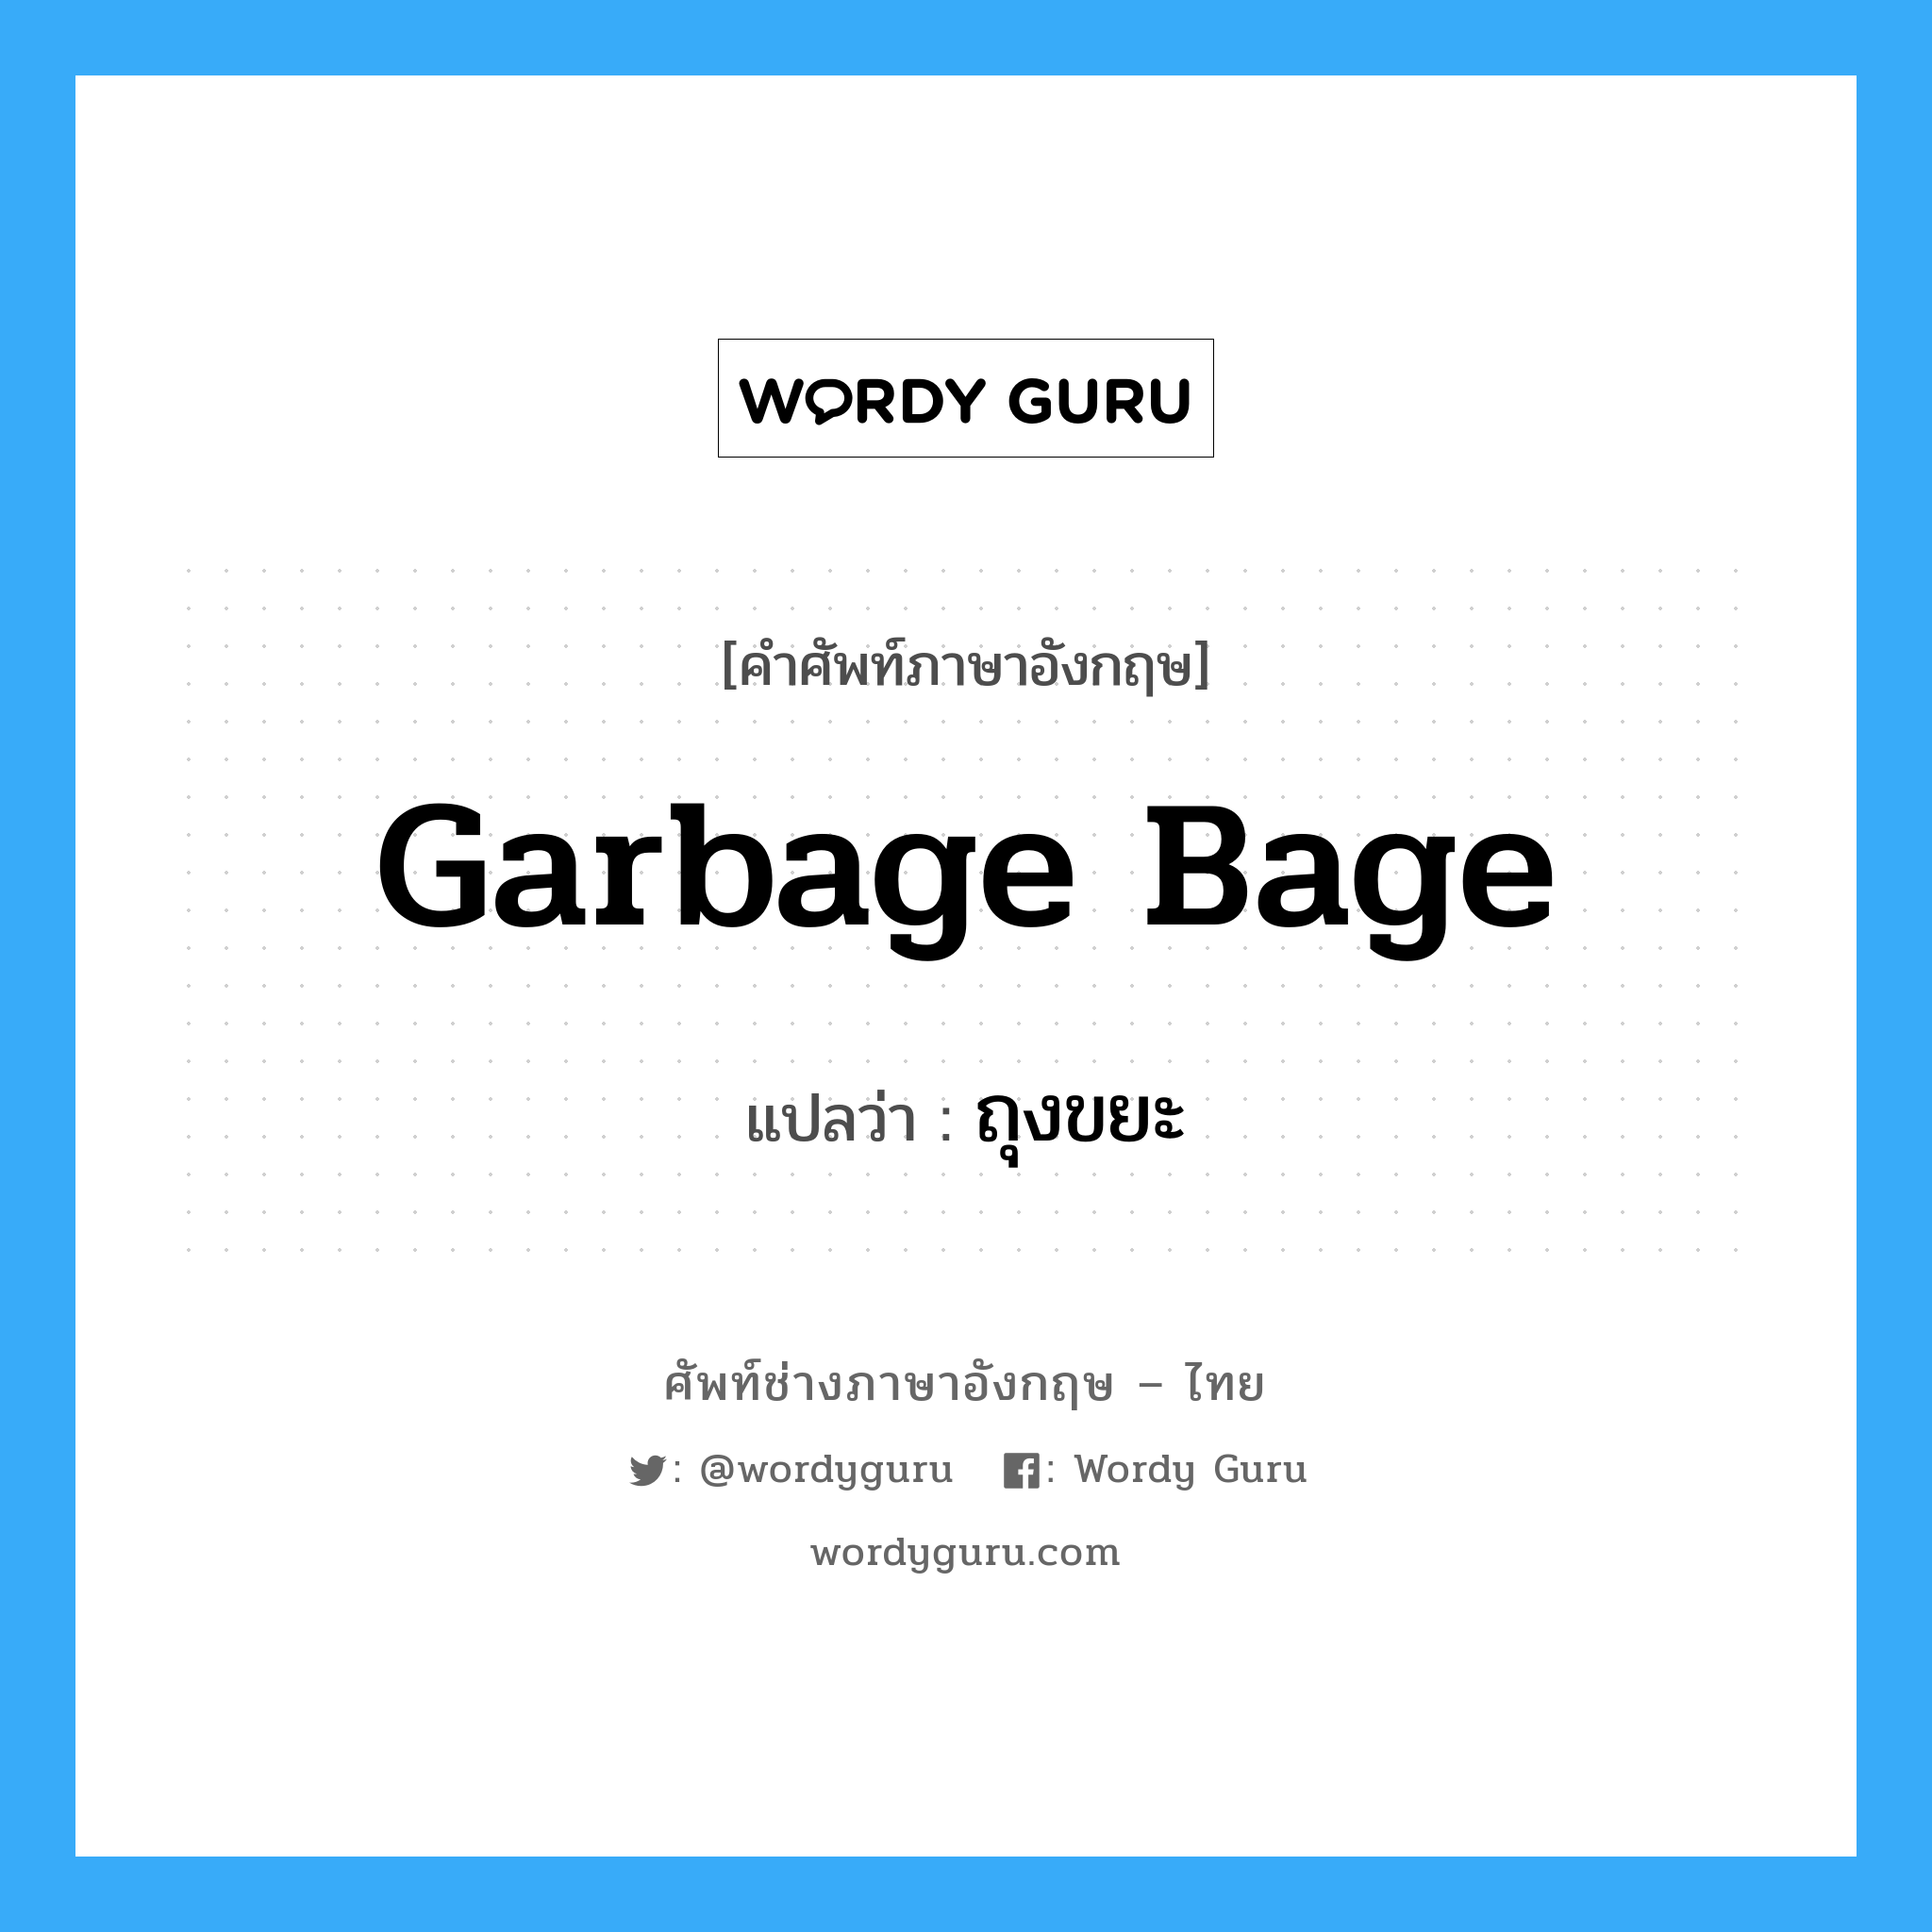 ถุงขยะ ภาษาอังกฤษ?, คำศัพท์ช่างภาษาอังกฤษ - ไทย ถุงขยะ คำศัพท์ภาษาอังกฤษ ถุงขยะ แปลว่า garbage bage